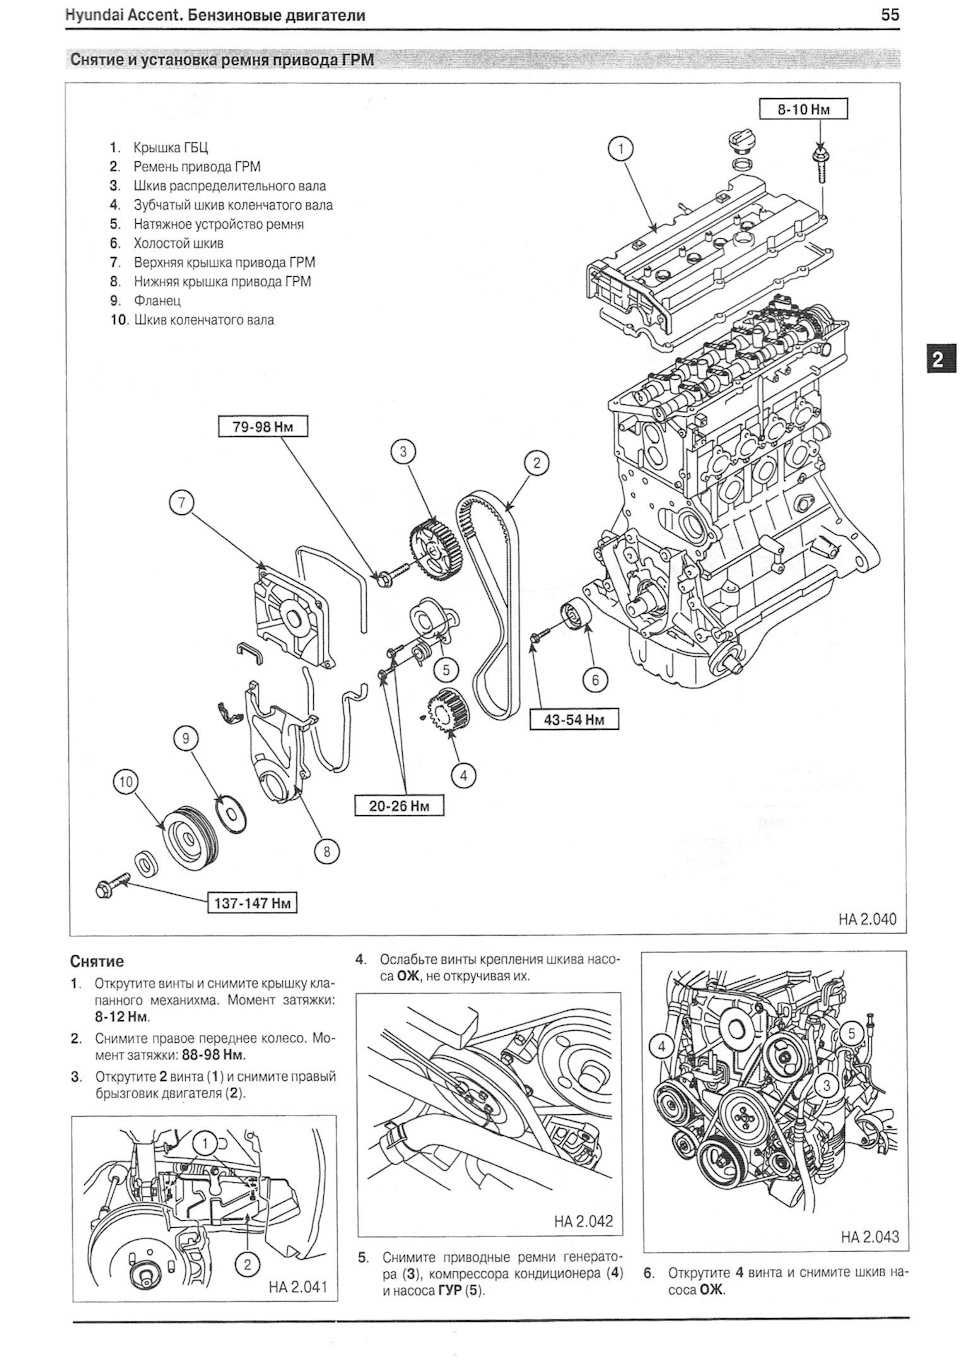 Перечень технических характеристик 4го поколения Hyundai Accent хэтчбек и седан и детальный обзор с фотографиями